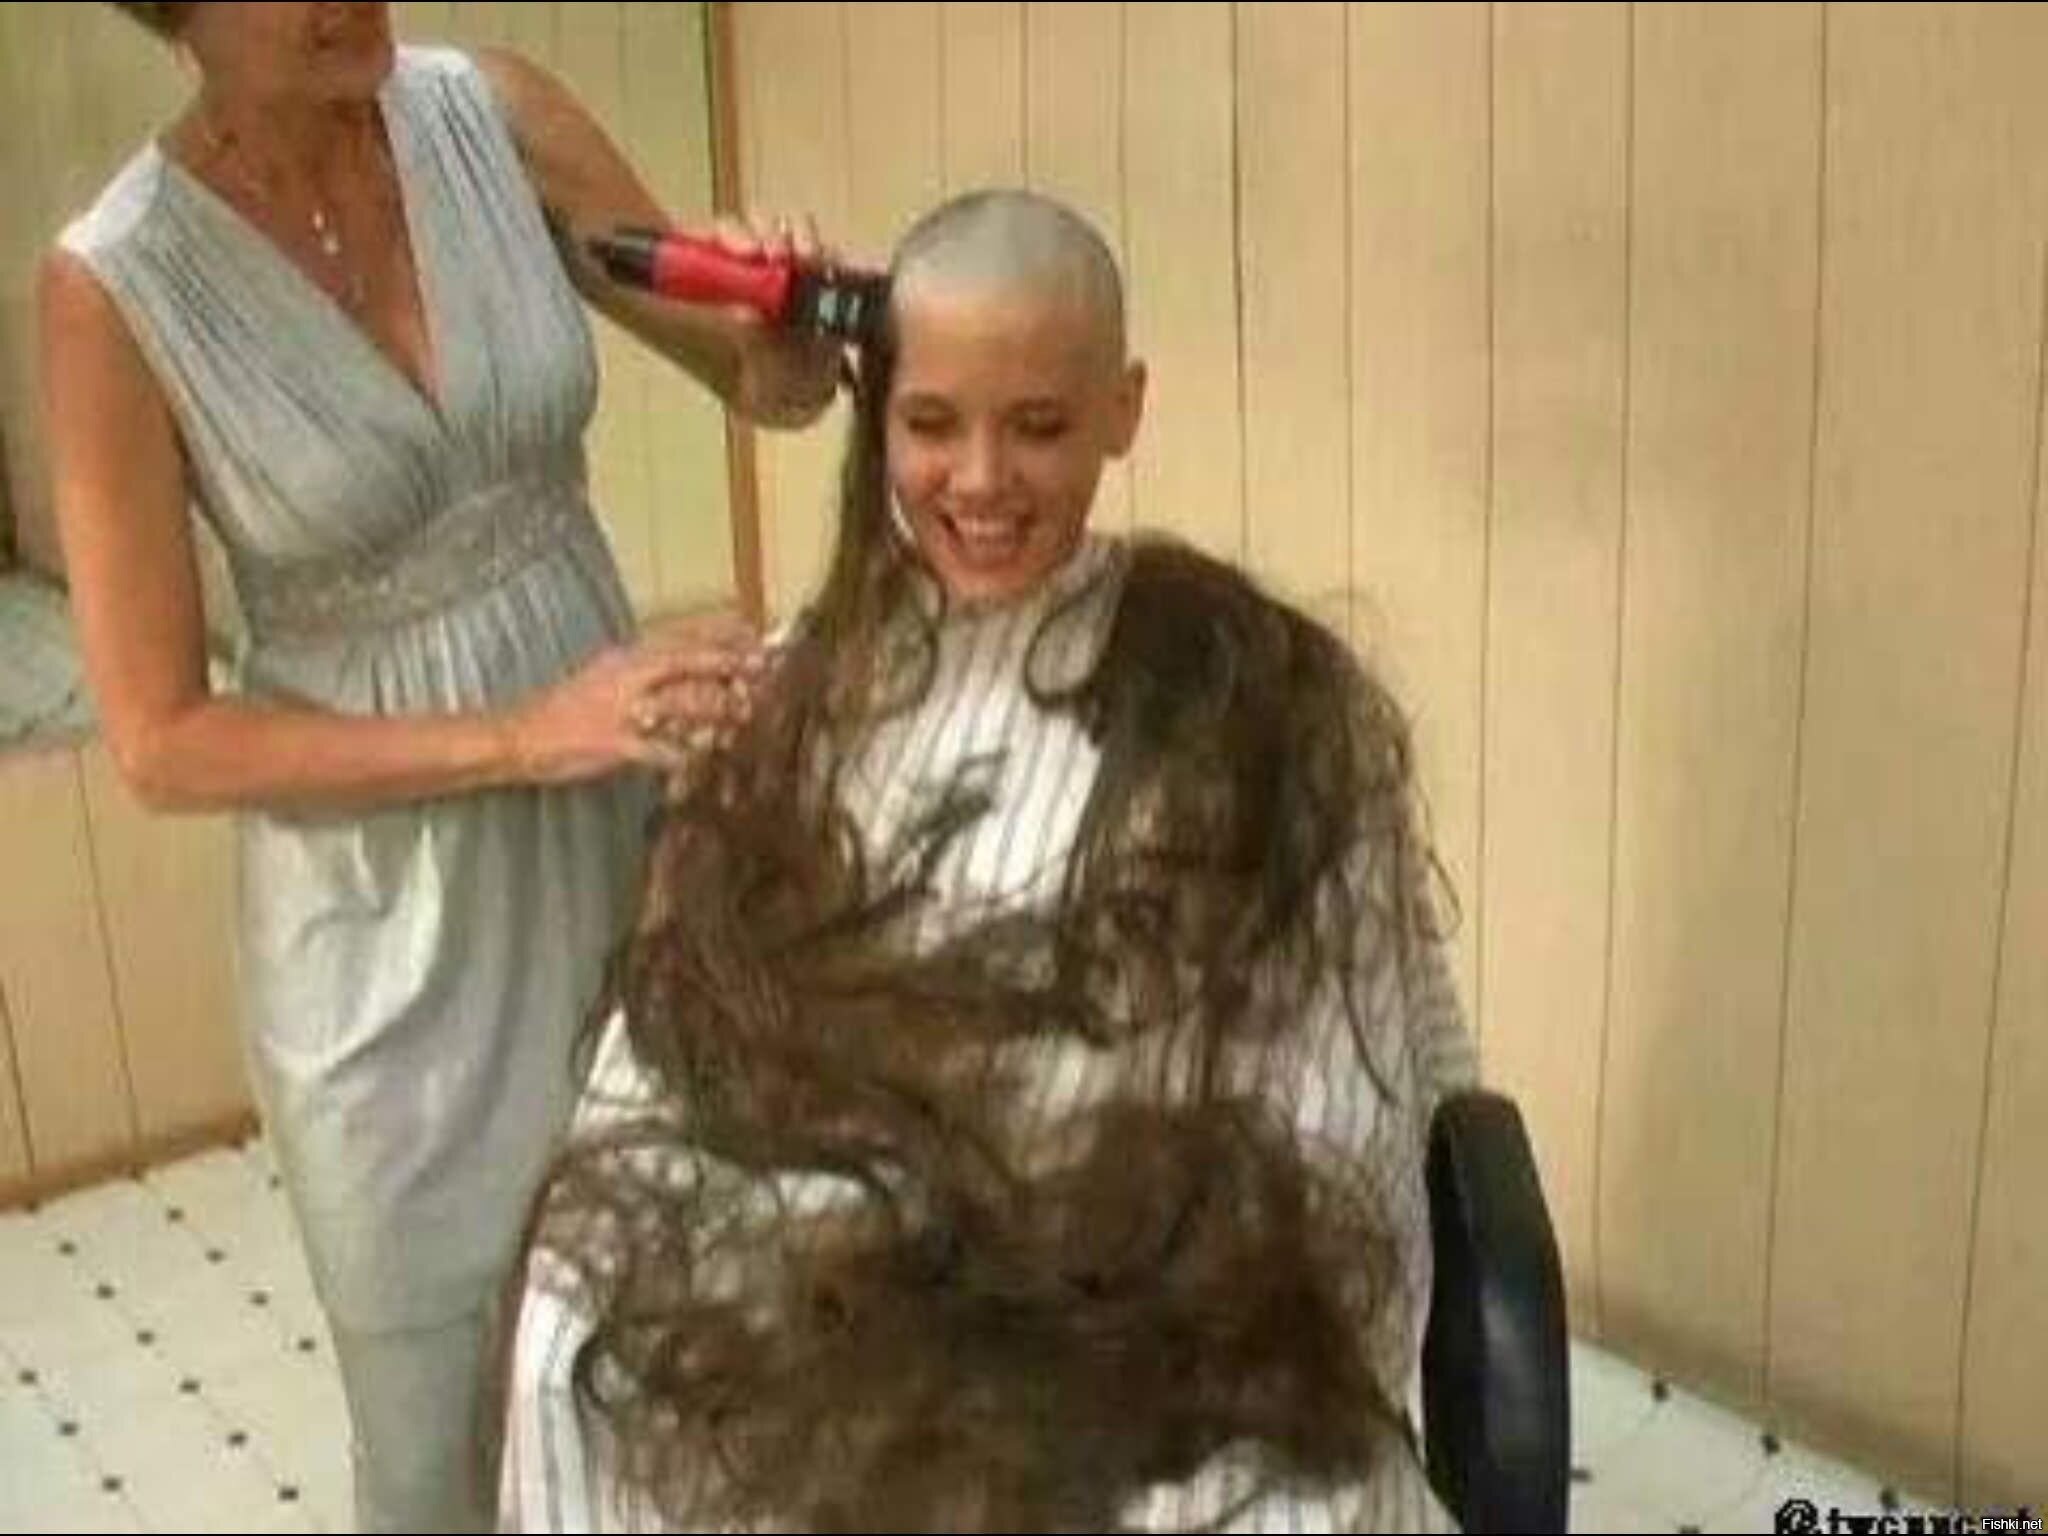 Парикмахер отказалась брить налысо девушку в депрессии и 2 дня спасала ее волосы